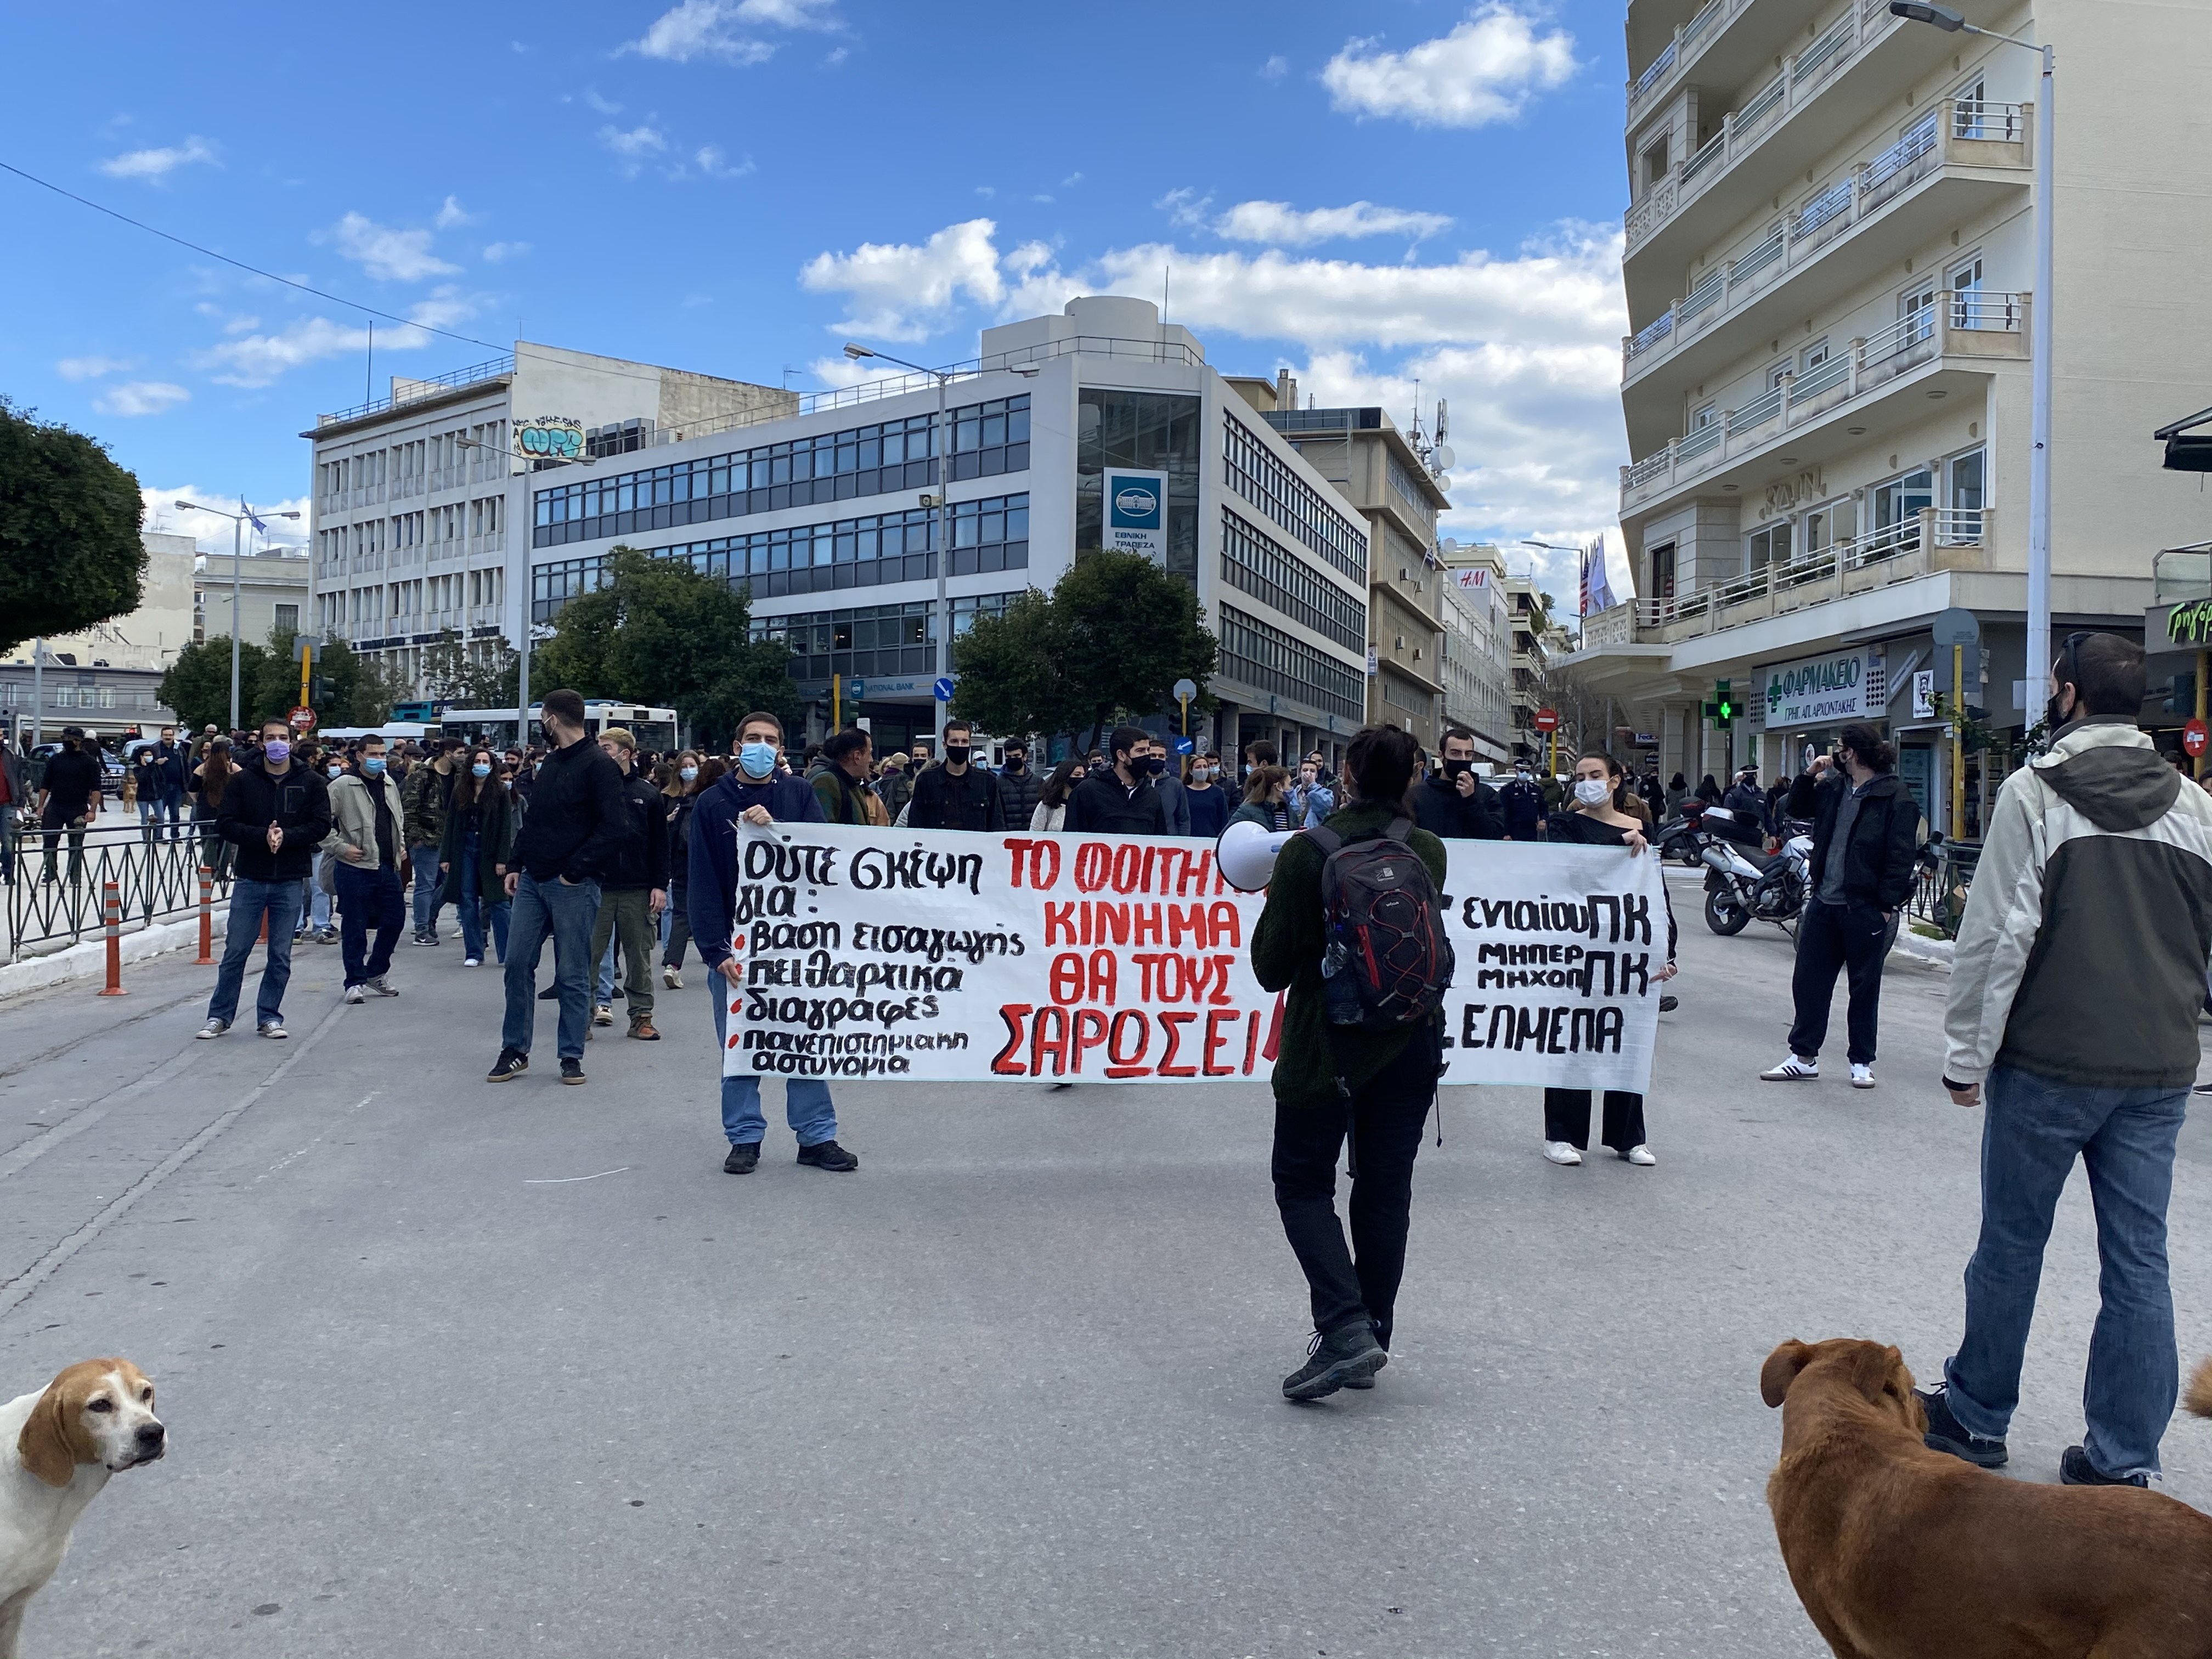 ΕΛΜΕ Χανίων: Πανεκπαιδευτικό συλλαλητήριο στην πλατεία Αγοράς